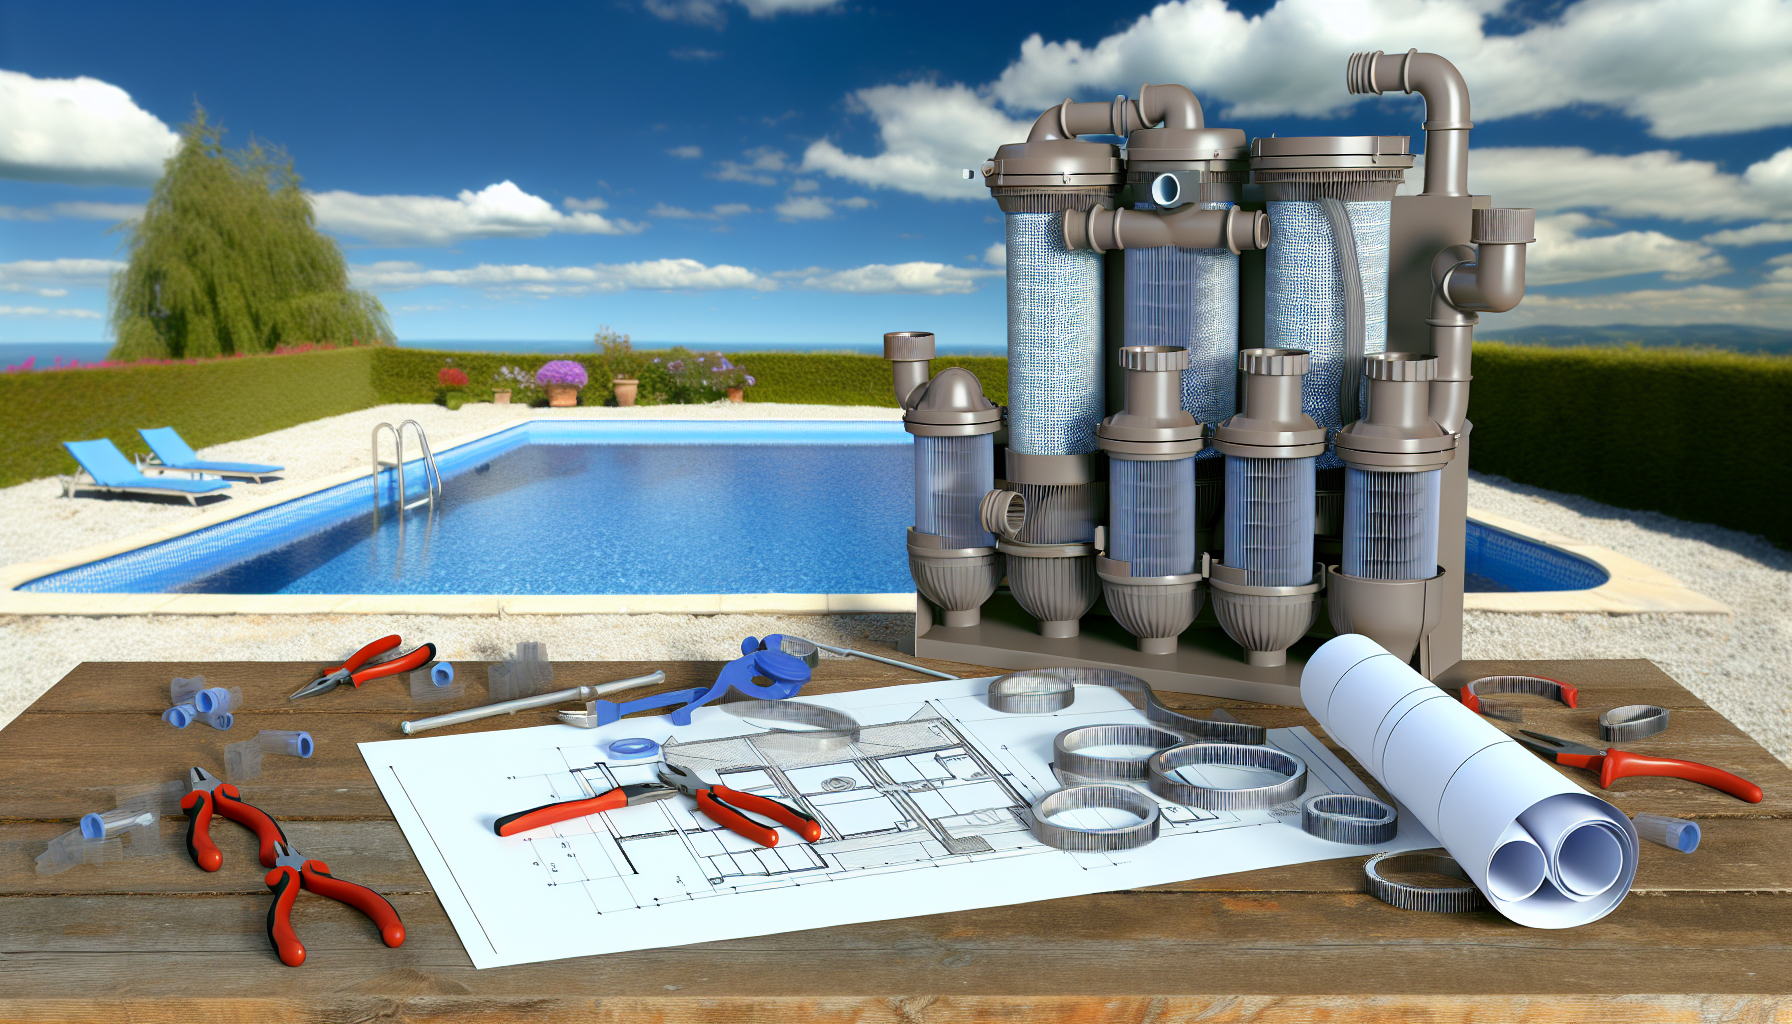 Poolwartungs-Ausrüstung und -Pläne vor einem Swimmingpool mit blauem Himmel im Hintergrund.